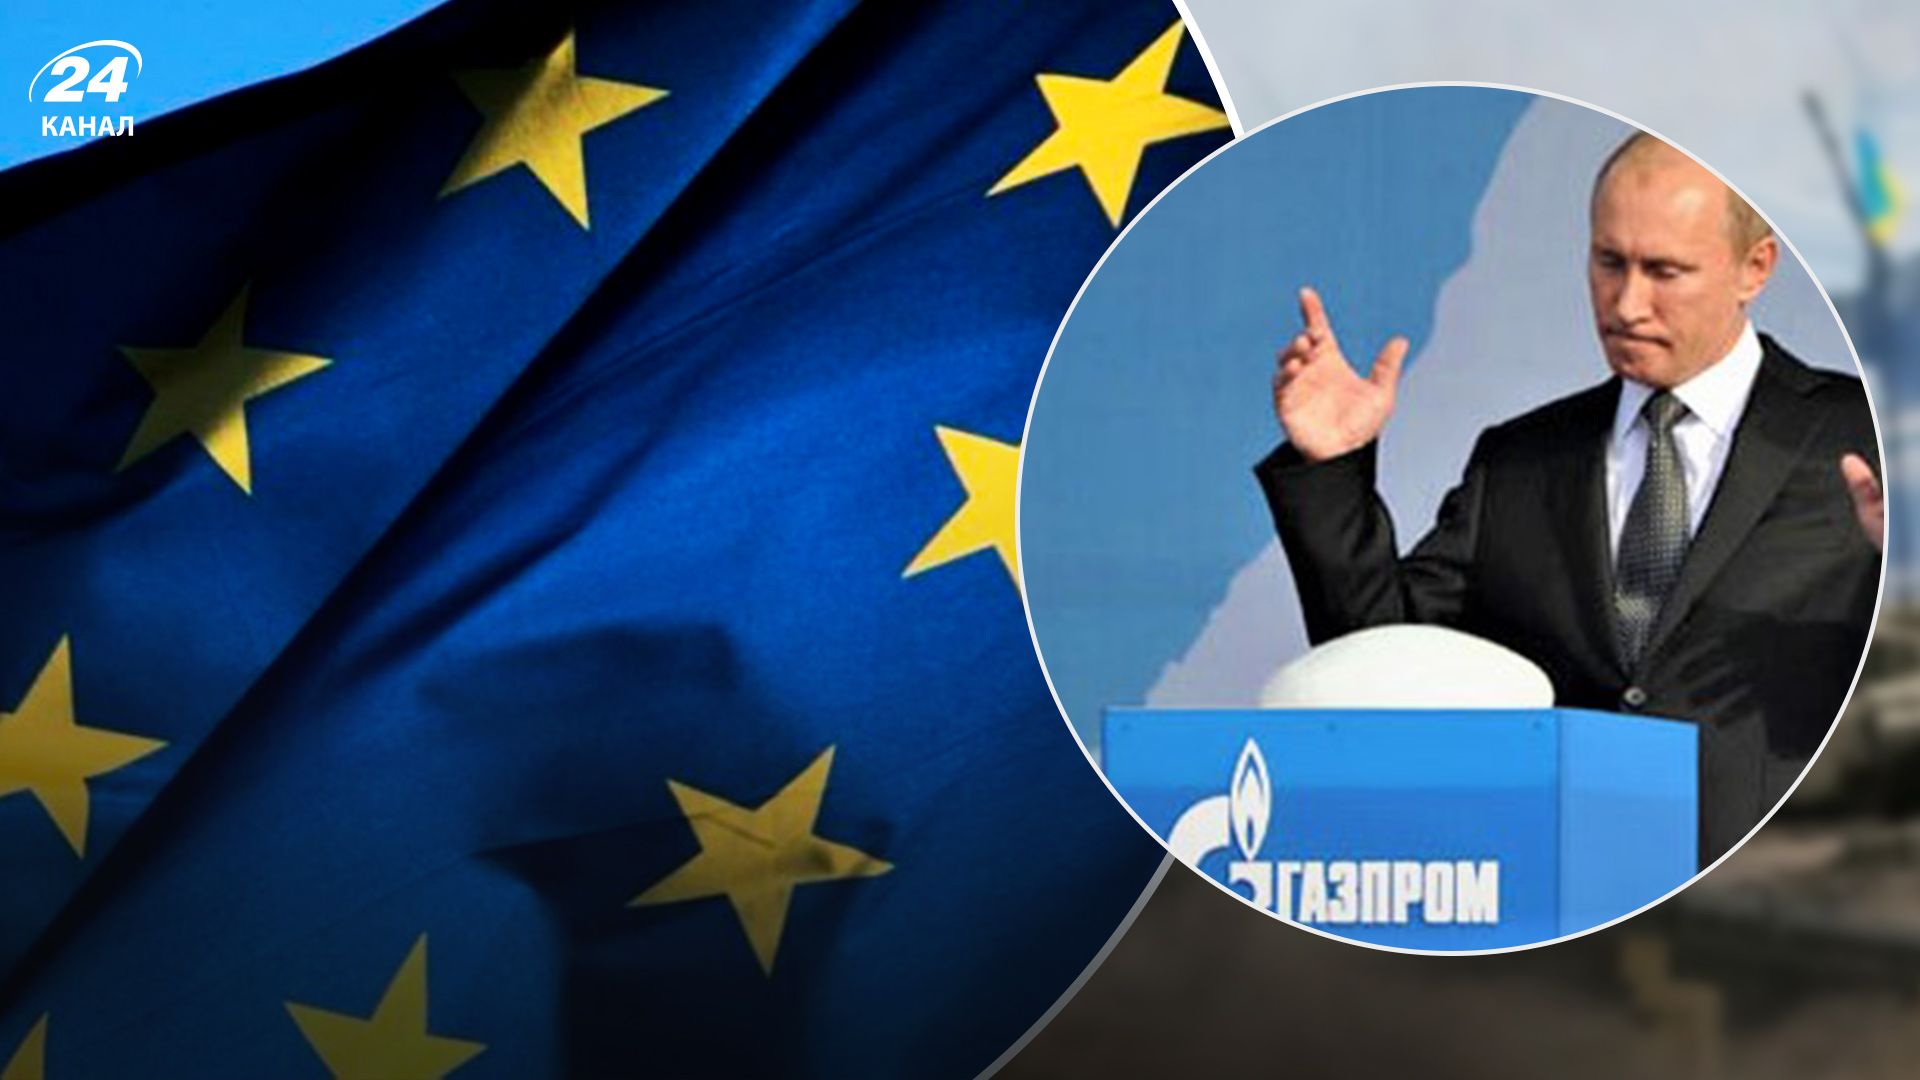 Европе неприемлемо отказываться от санкций, – Шейтельман прокомментировал газовый шантаж путина